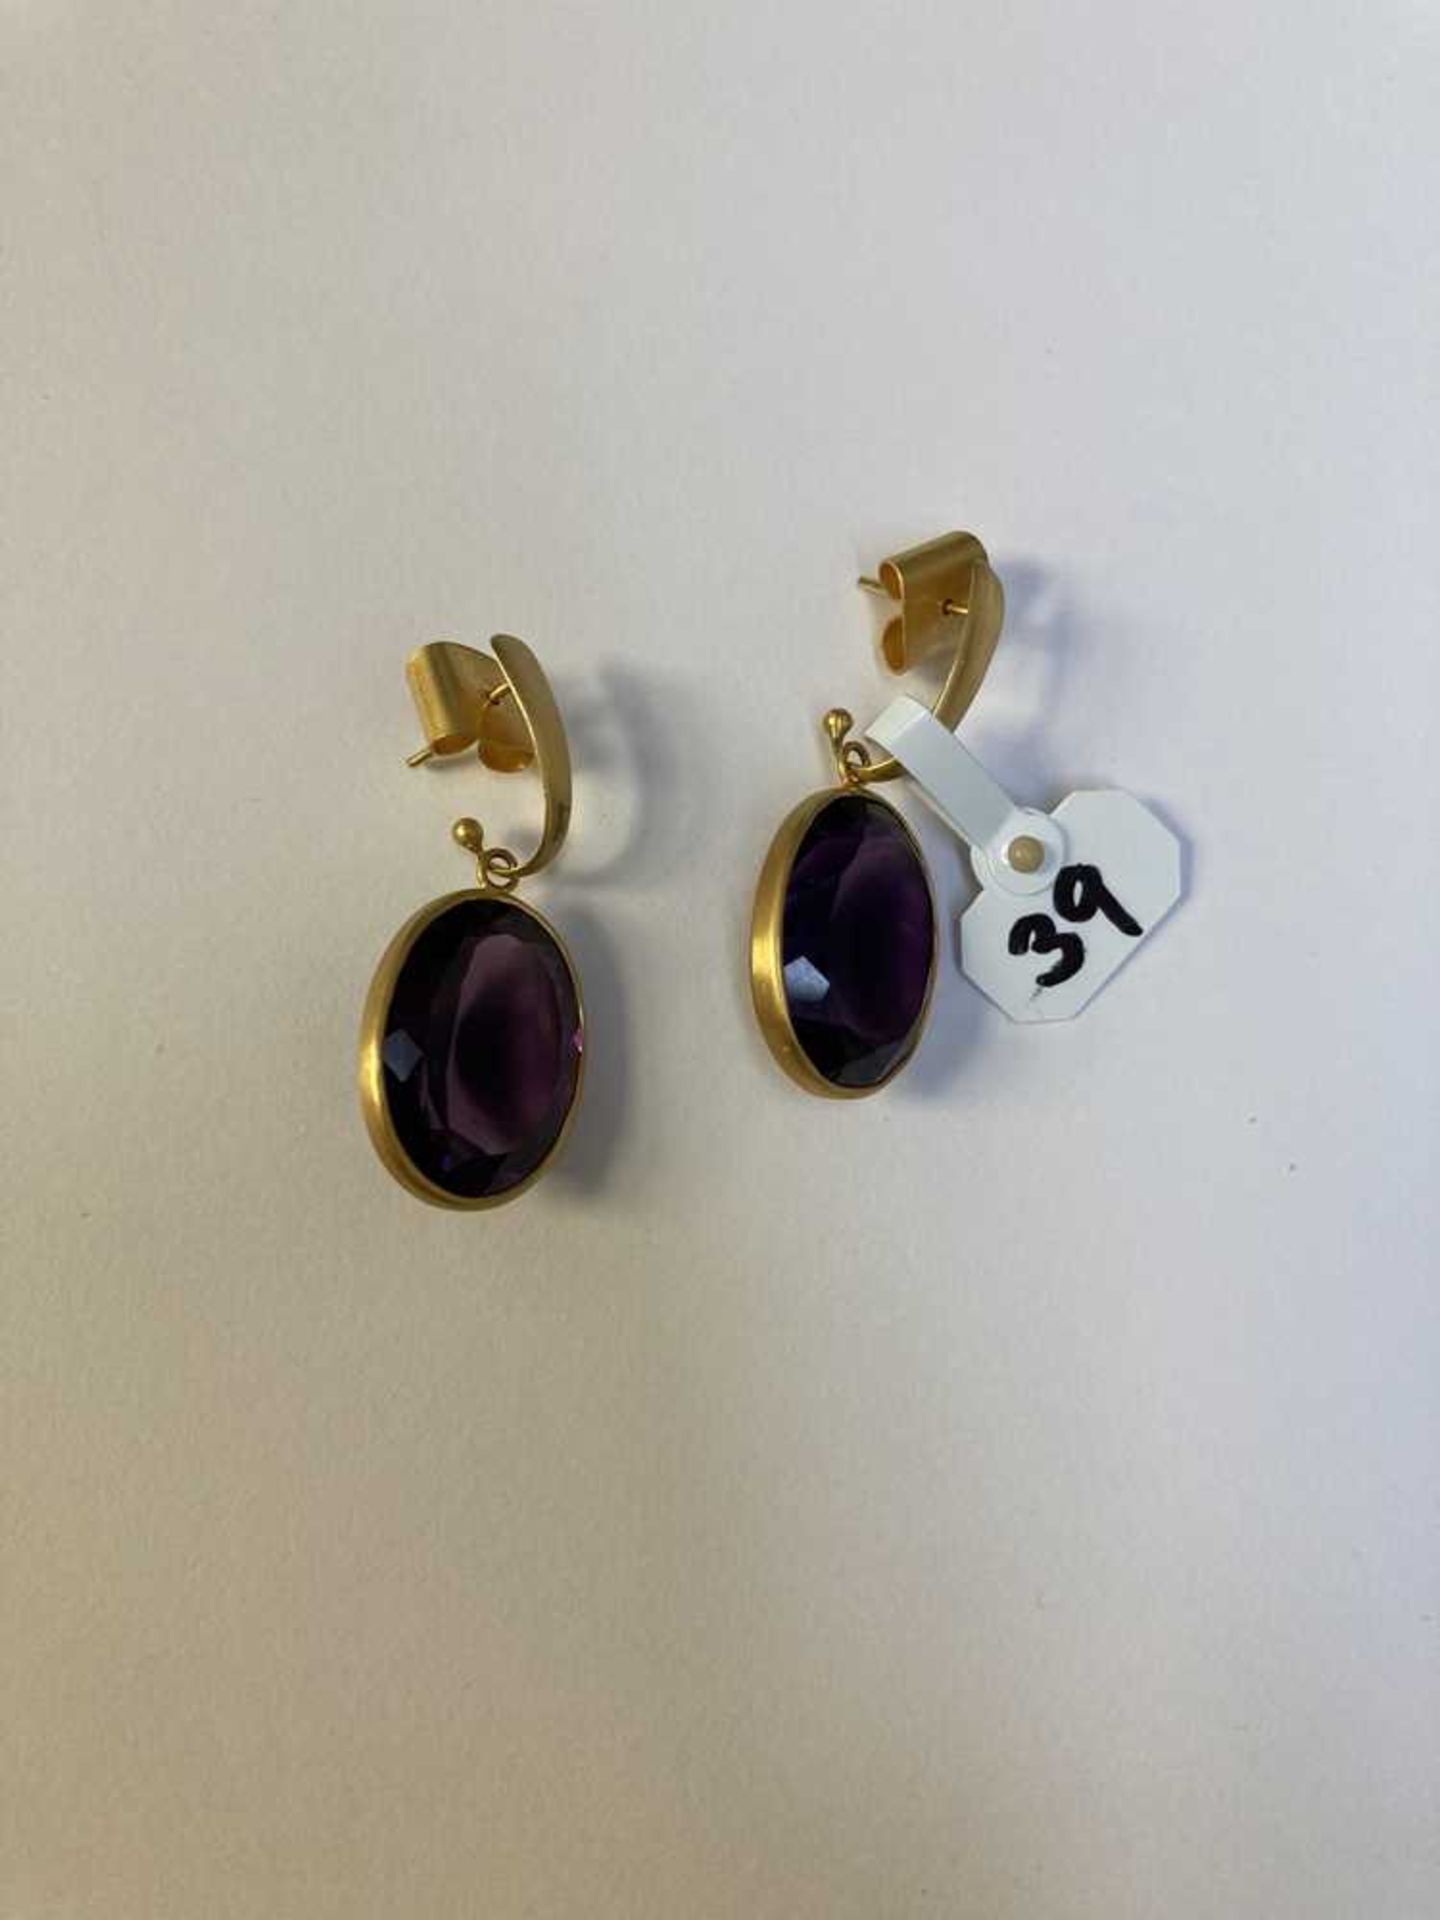 A pair of amethyst earrings - Image 2 of 3